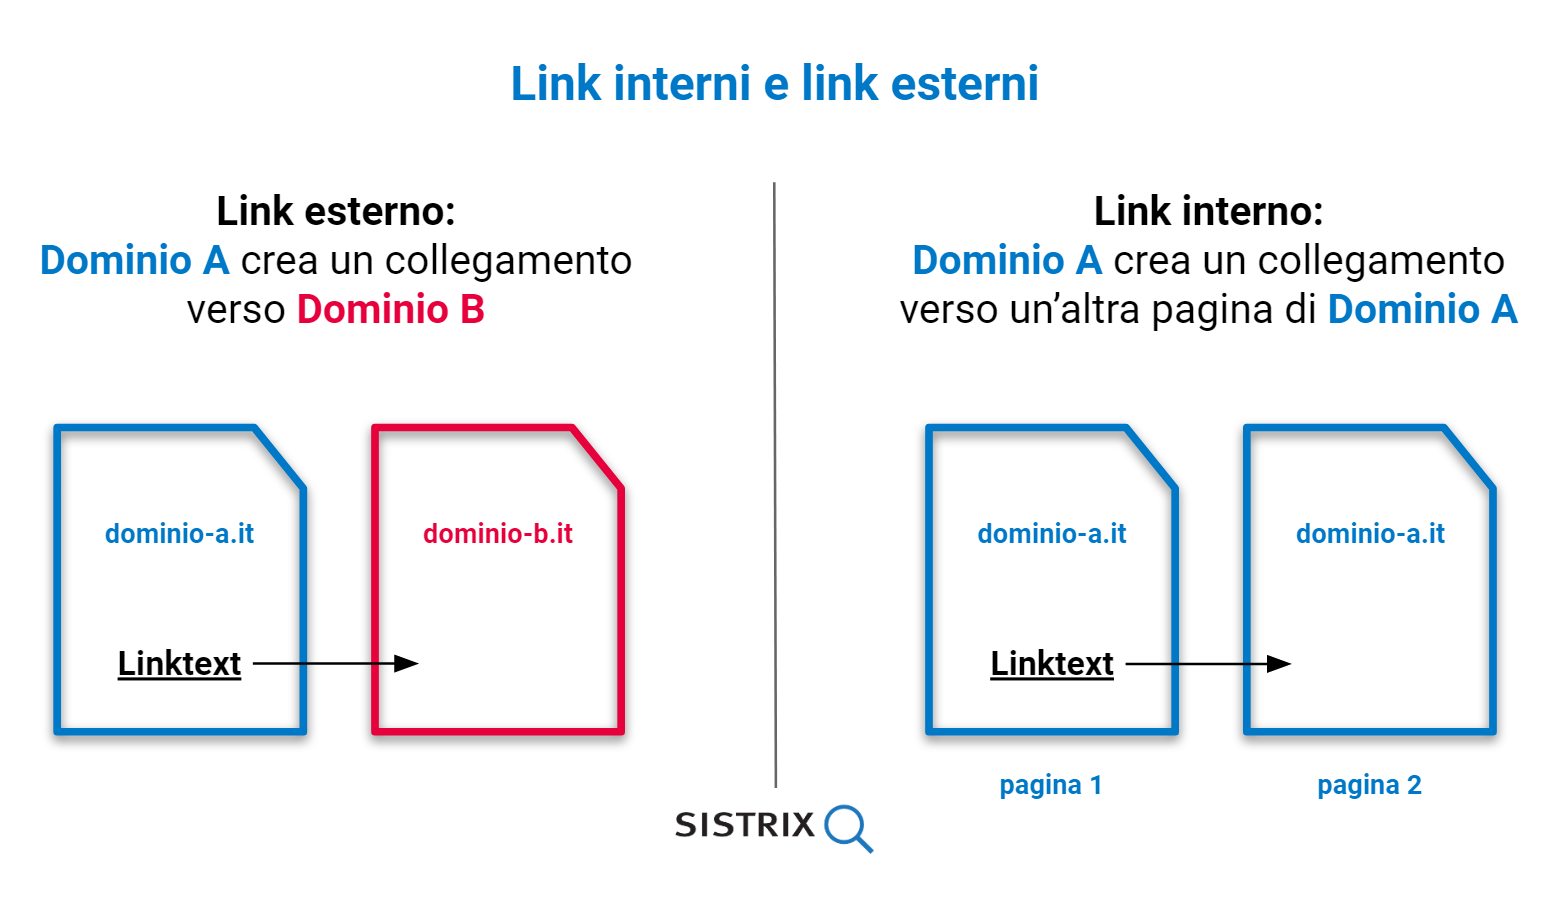 immagine che spiega graficamente la differenza tra link interni e link esterni. I link interni creano un collegamento da un dominio A a un dominio A mentre i link esterni da un dominio A a un dominio B.